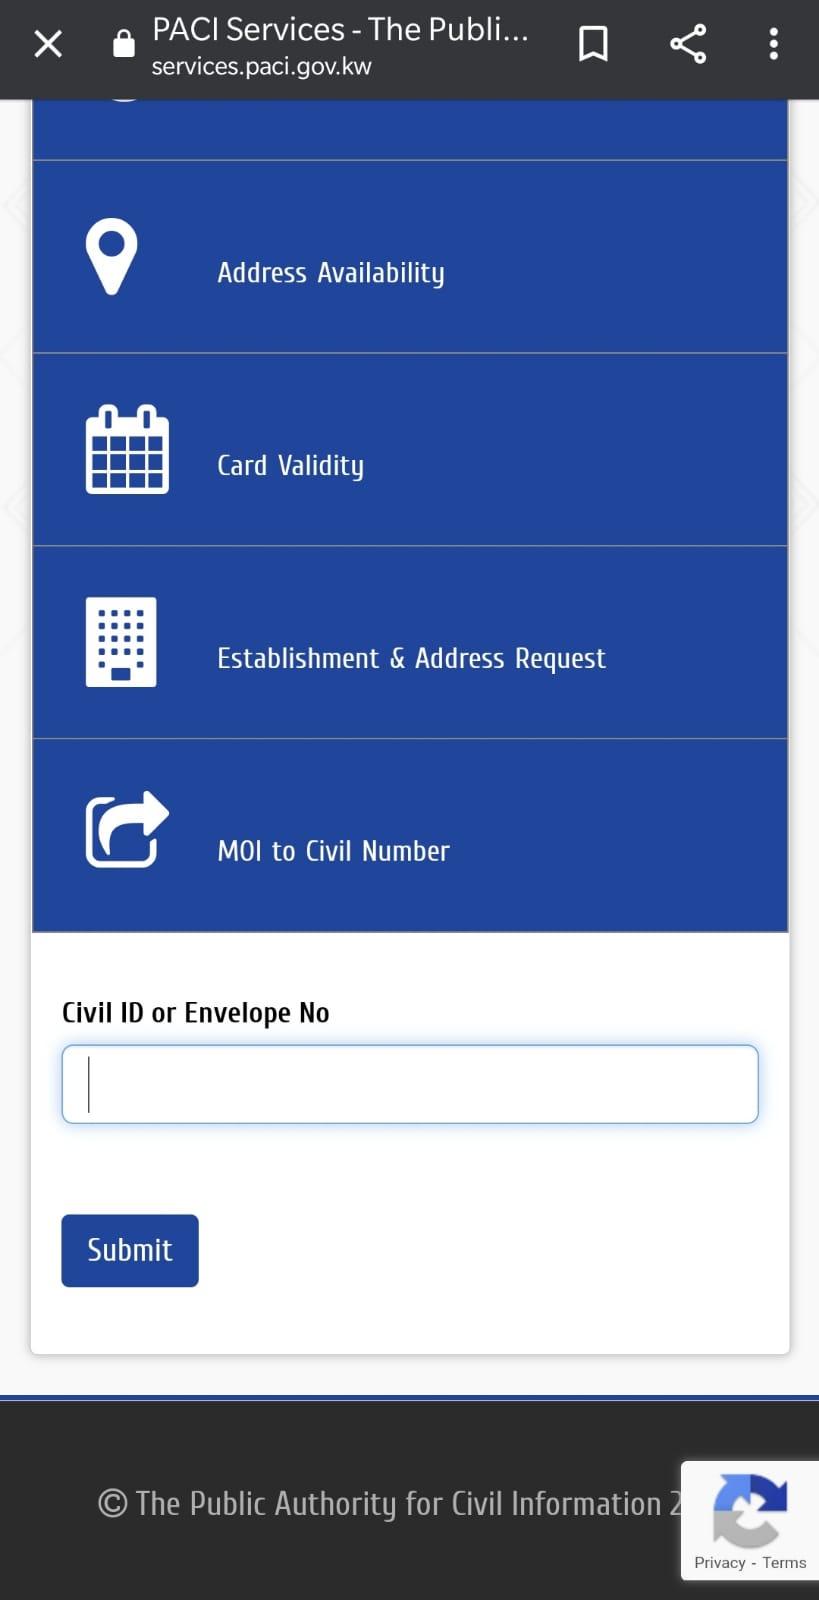 Kuwait Civil ID Status On PACI Website